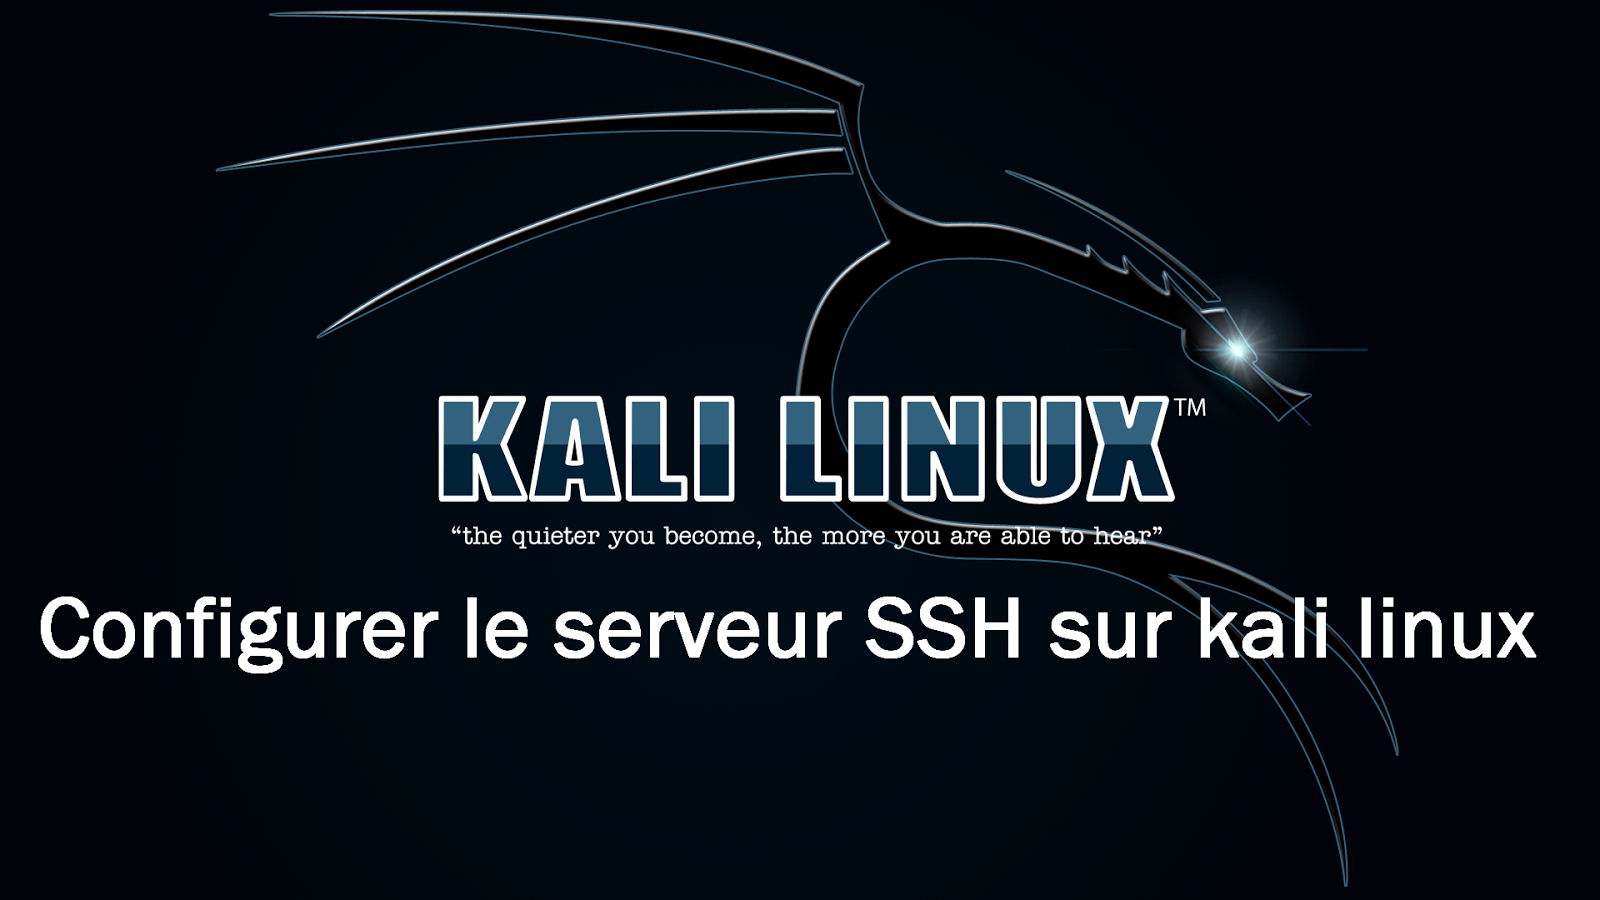 Kali Linux Free Download Logo Image